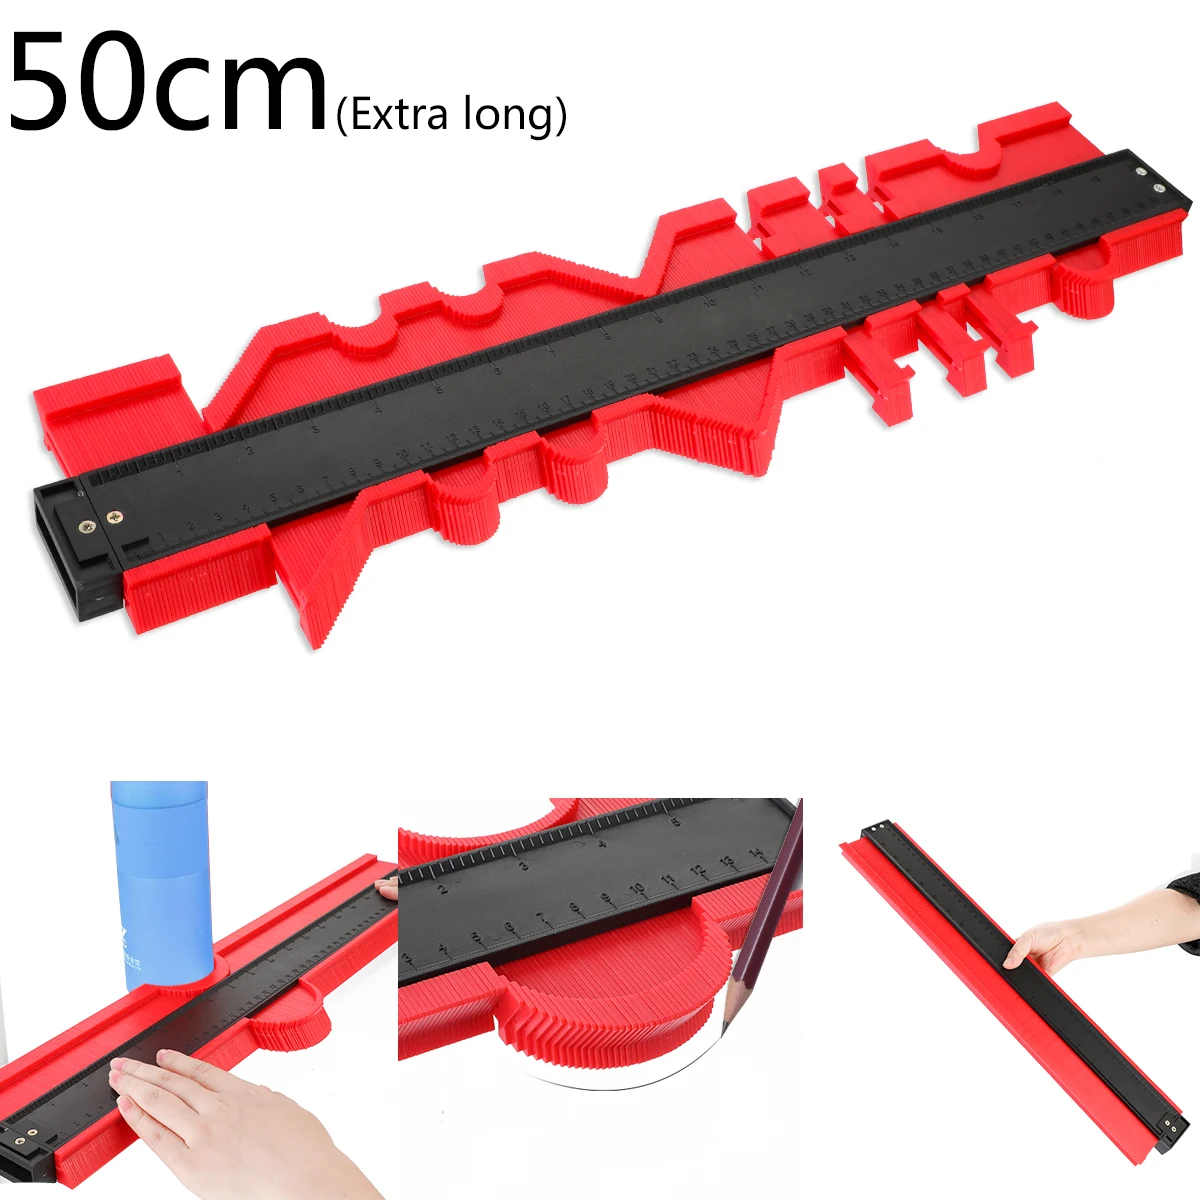 Многофункциональный контурный профиль калибровочный край формирующая измерительная линейка пластиковый контурный дубликатор для плиточного ламината деревообрабатывающий инструмент - Цвет: long 50cm red